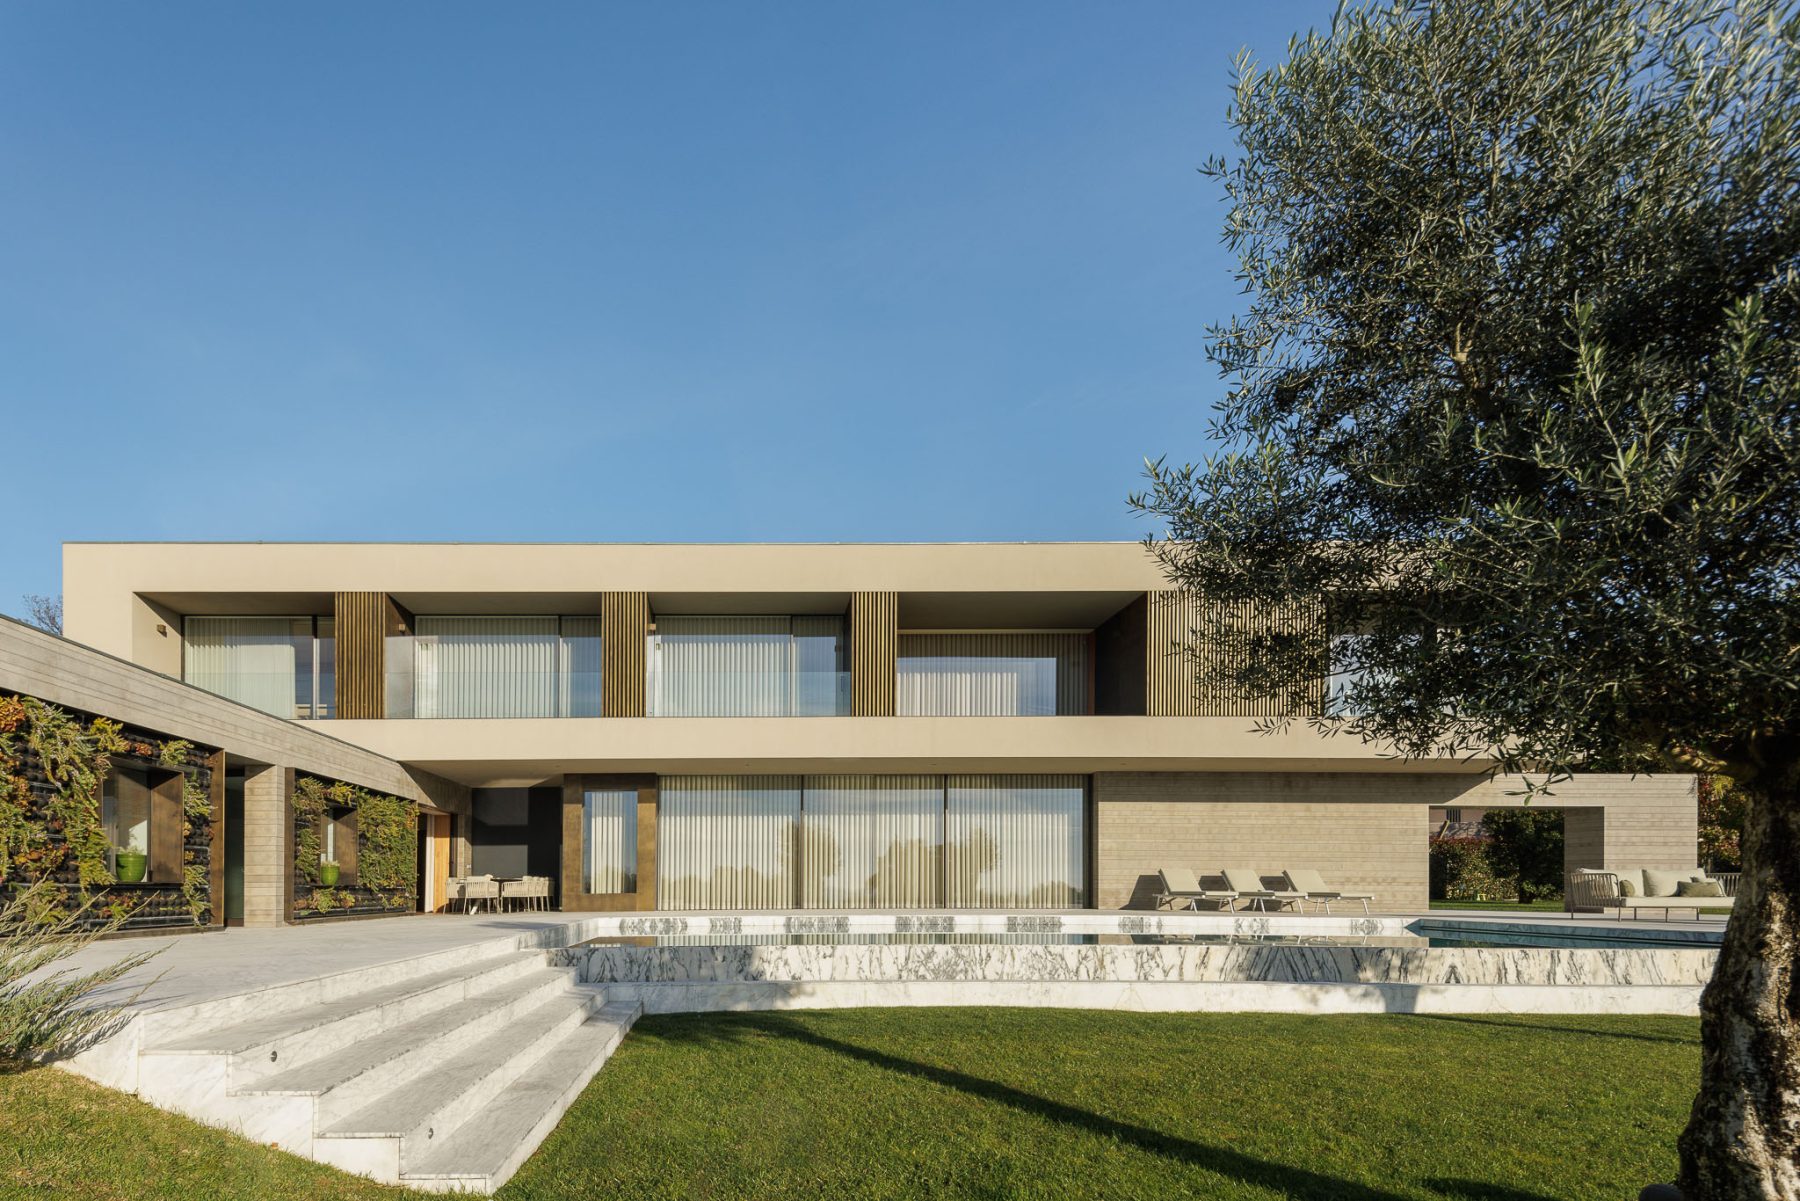 Casa D em Braga com Arquitectura LDARQ e fotografias de Ivo Tava